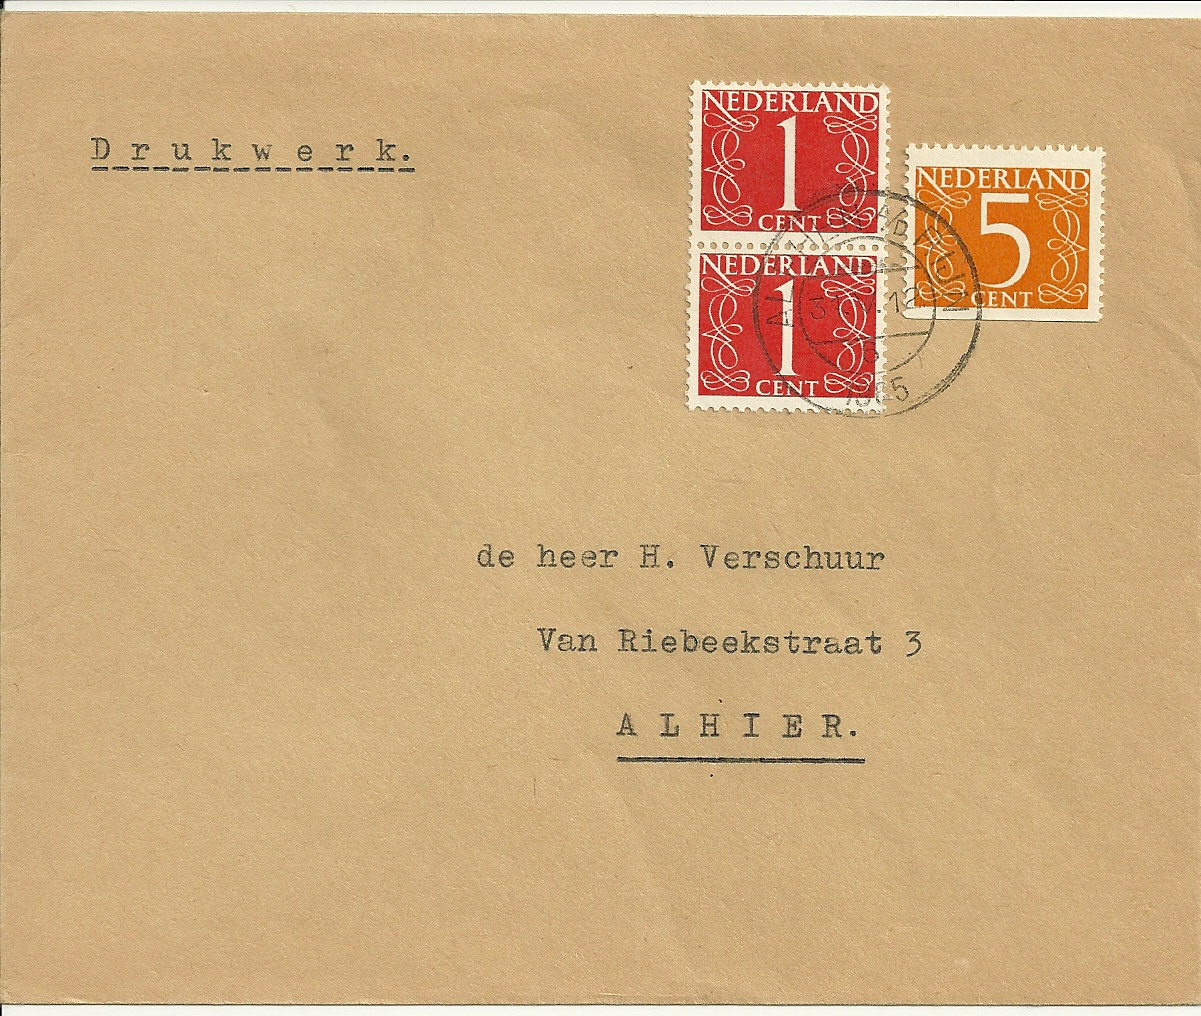 Drukwerk verzonden van Alphen a/d Rijn naar Alphen a/d Rijn op 31 mei 1965. Papier van zegel is V, dus afkomstig uit Pb2h